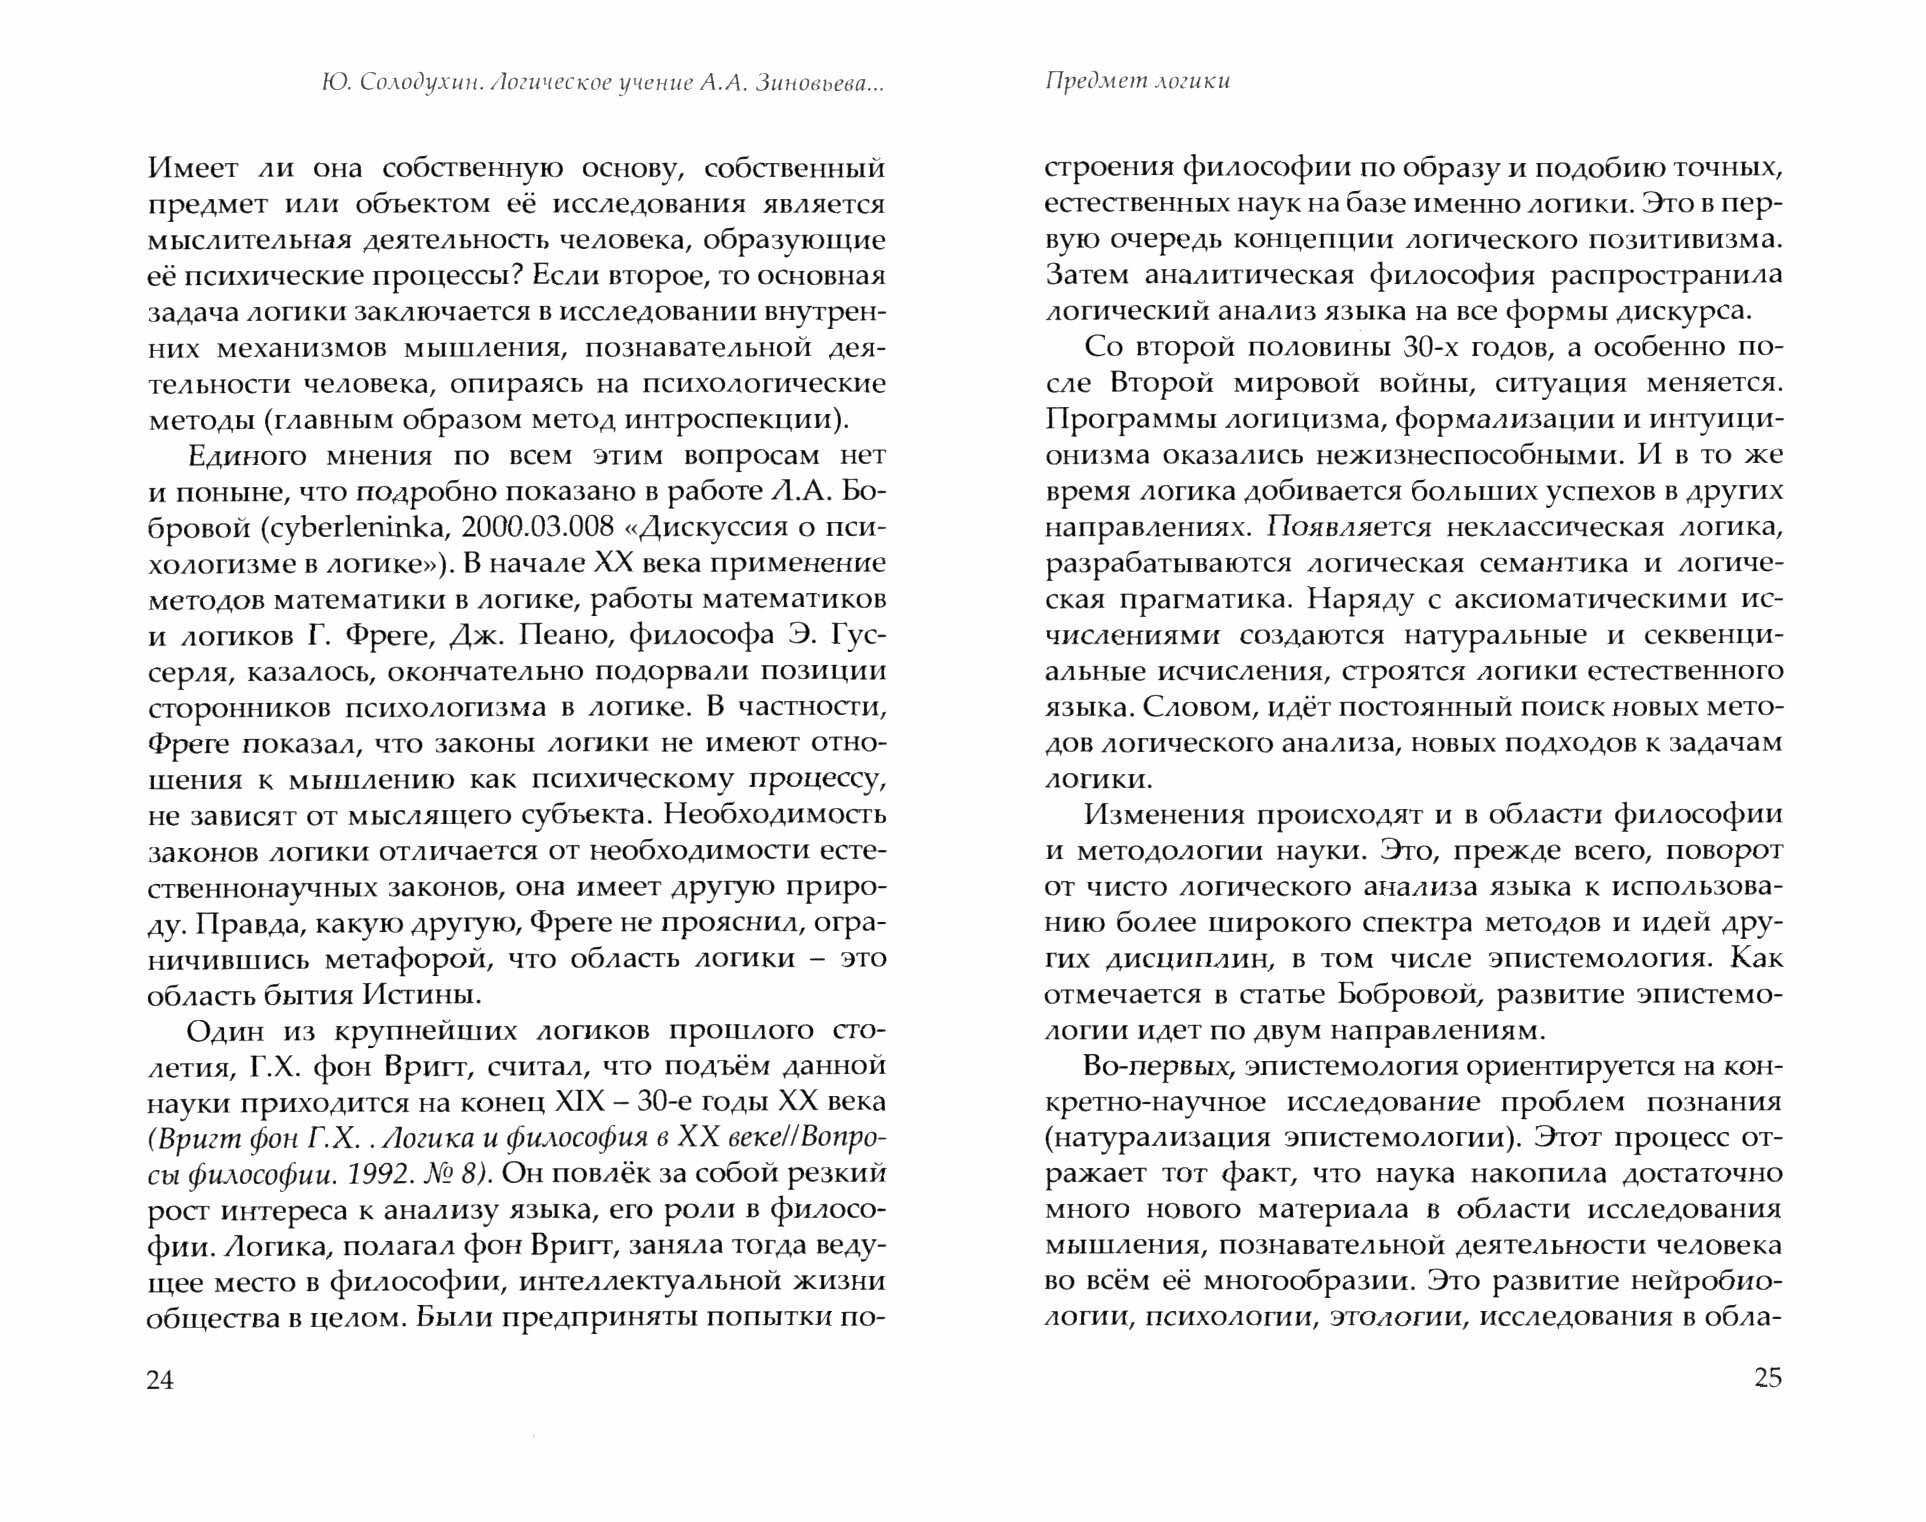 Логика и методология Александра Зиновьева - фото №3